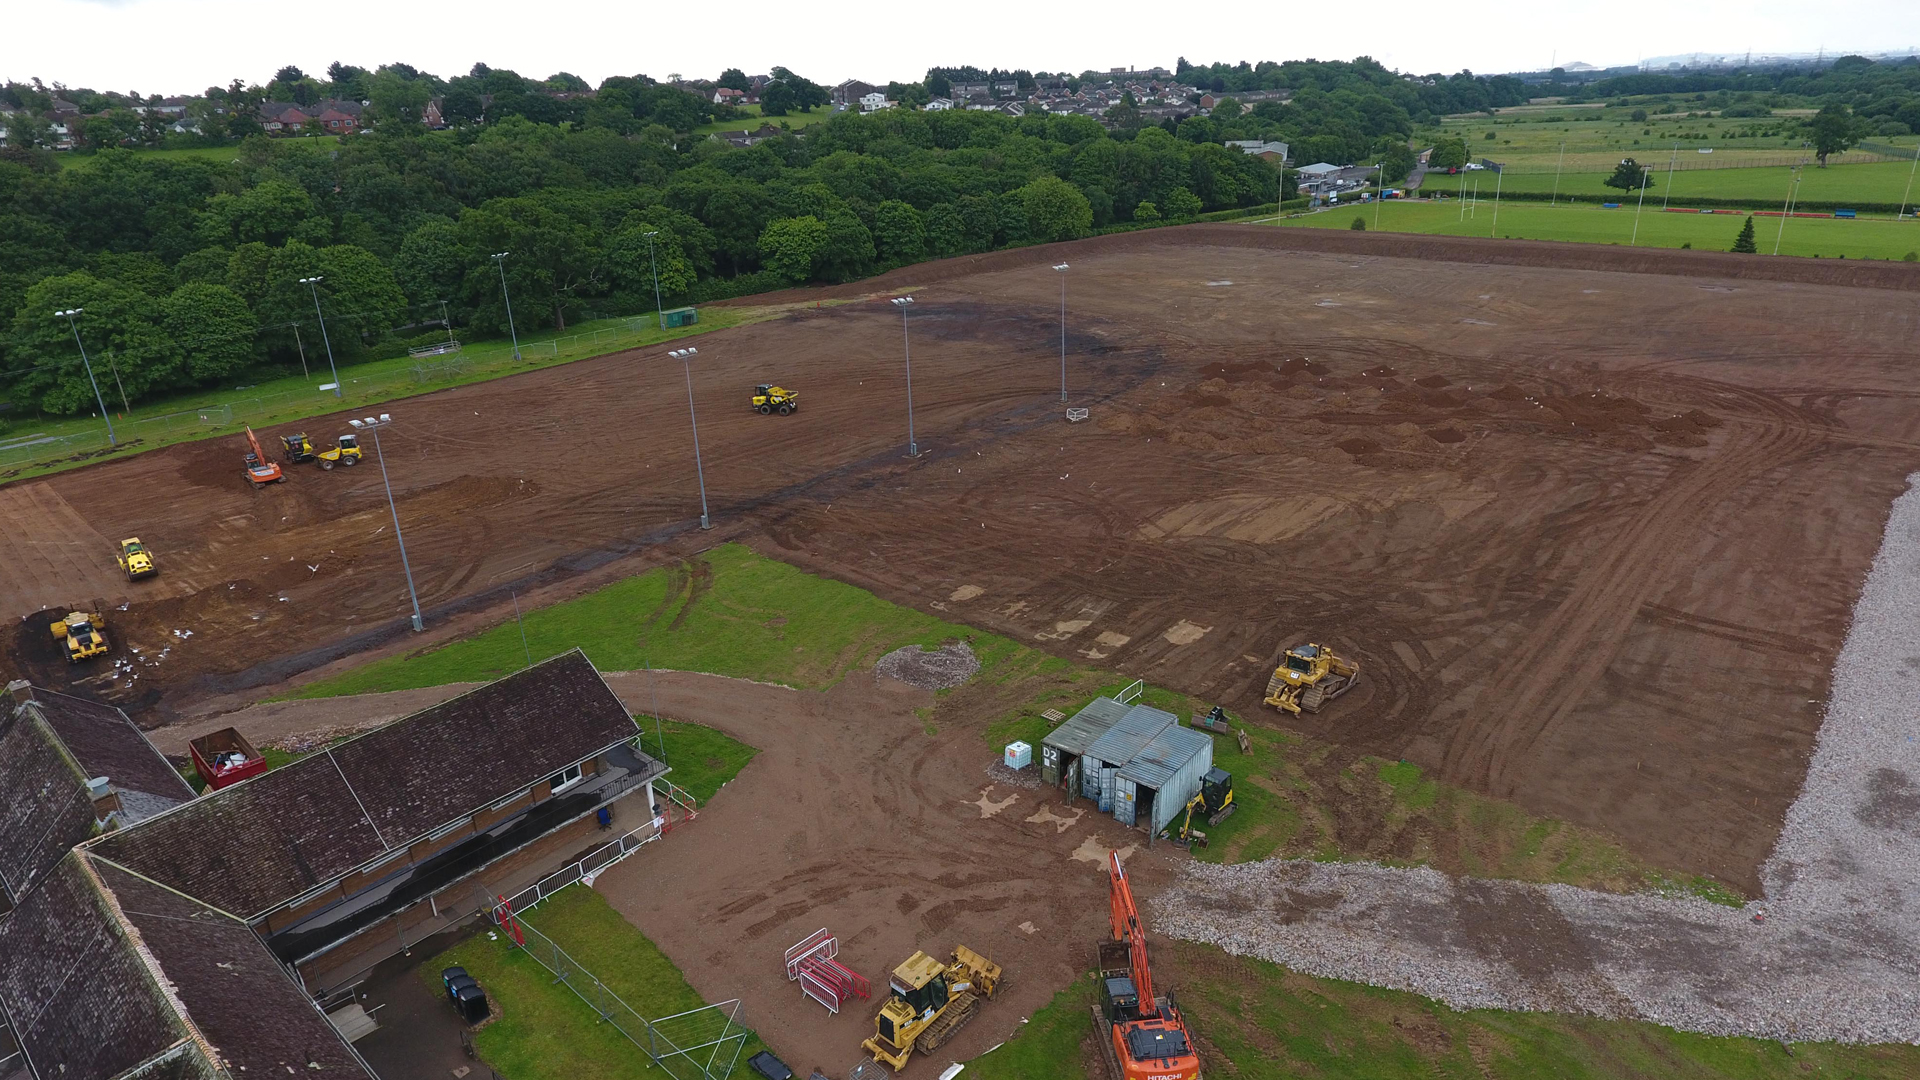 Development begins at Llanrumney Sports Complex.